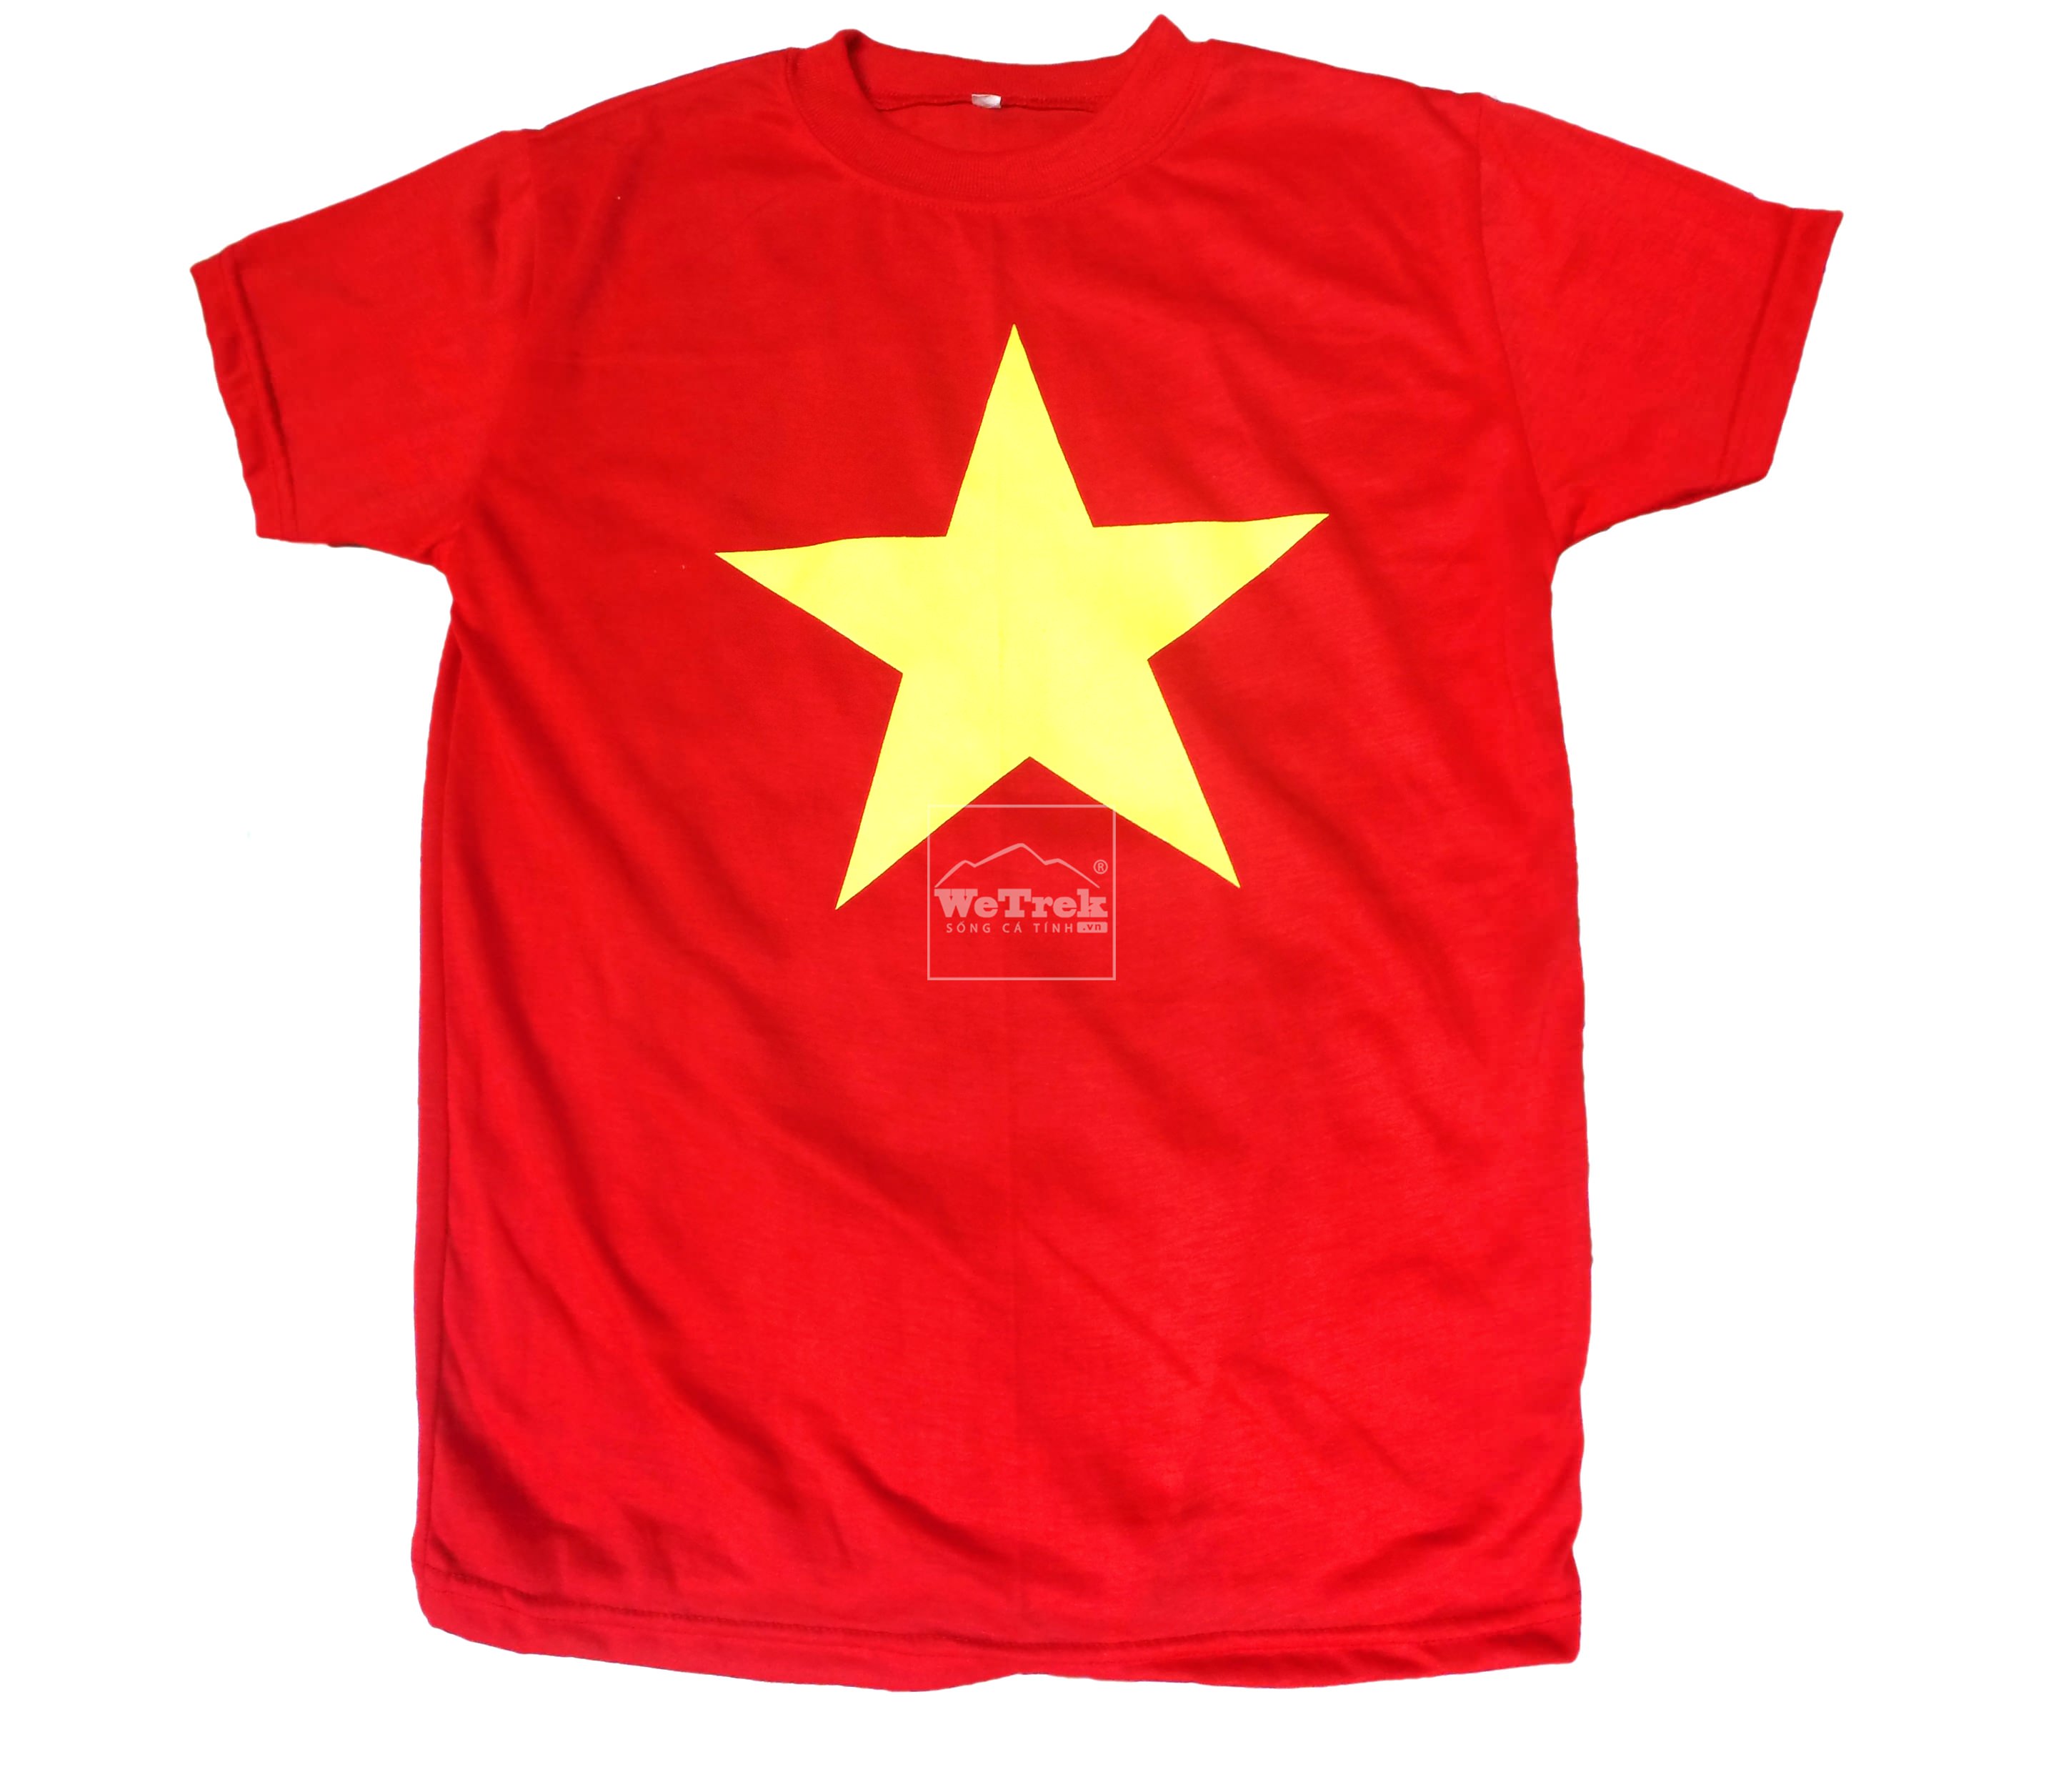 Áo cờ đỏ sao vàng:
Áo cờ đỏ sao vàng là biểu tượng vô cùng quan trọng trong lịch sử và văn hóa của dân tộc Việt Nam. Không chỉ là chiếc áo để đời của Bác Hồ, nó còn là tinh thần của một dân tộc kiên cường và mãnh liệt. Hãy xem hình ảnh để thấy rõ sự đẹp đẽ và ý nghĩa của chiếc áo đặc biệt này.